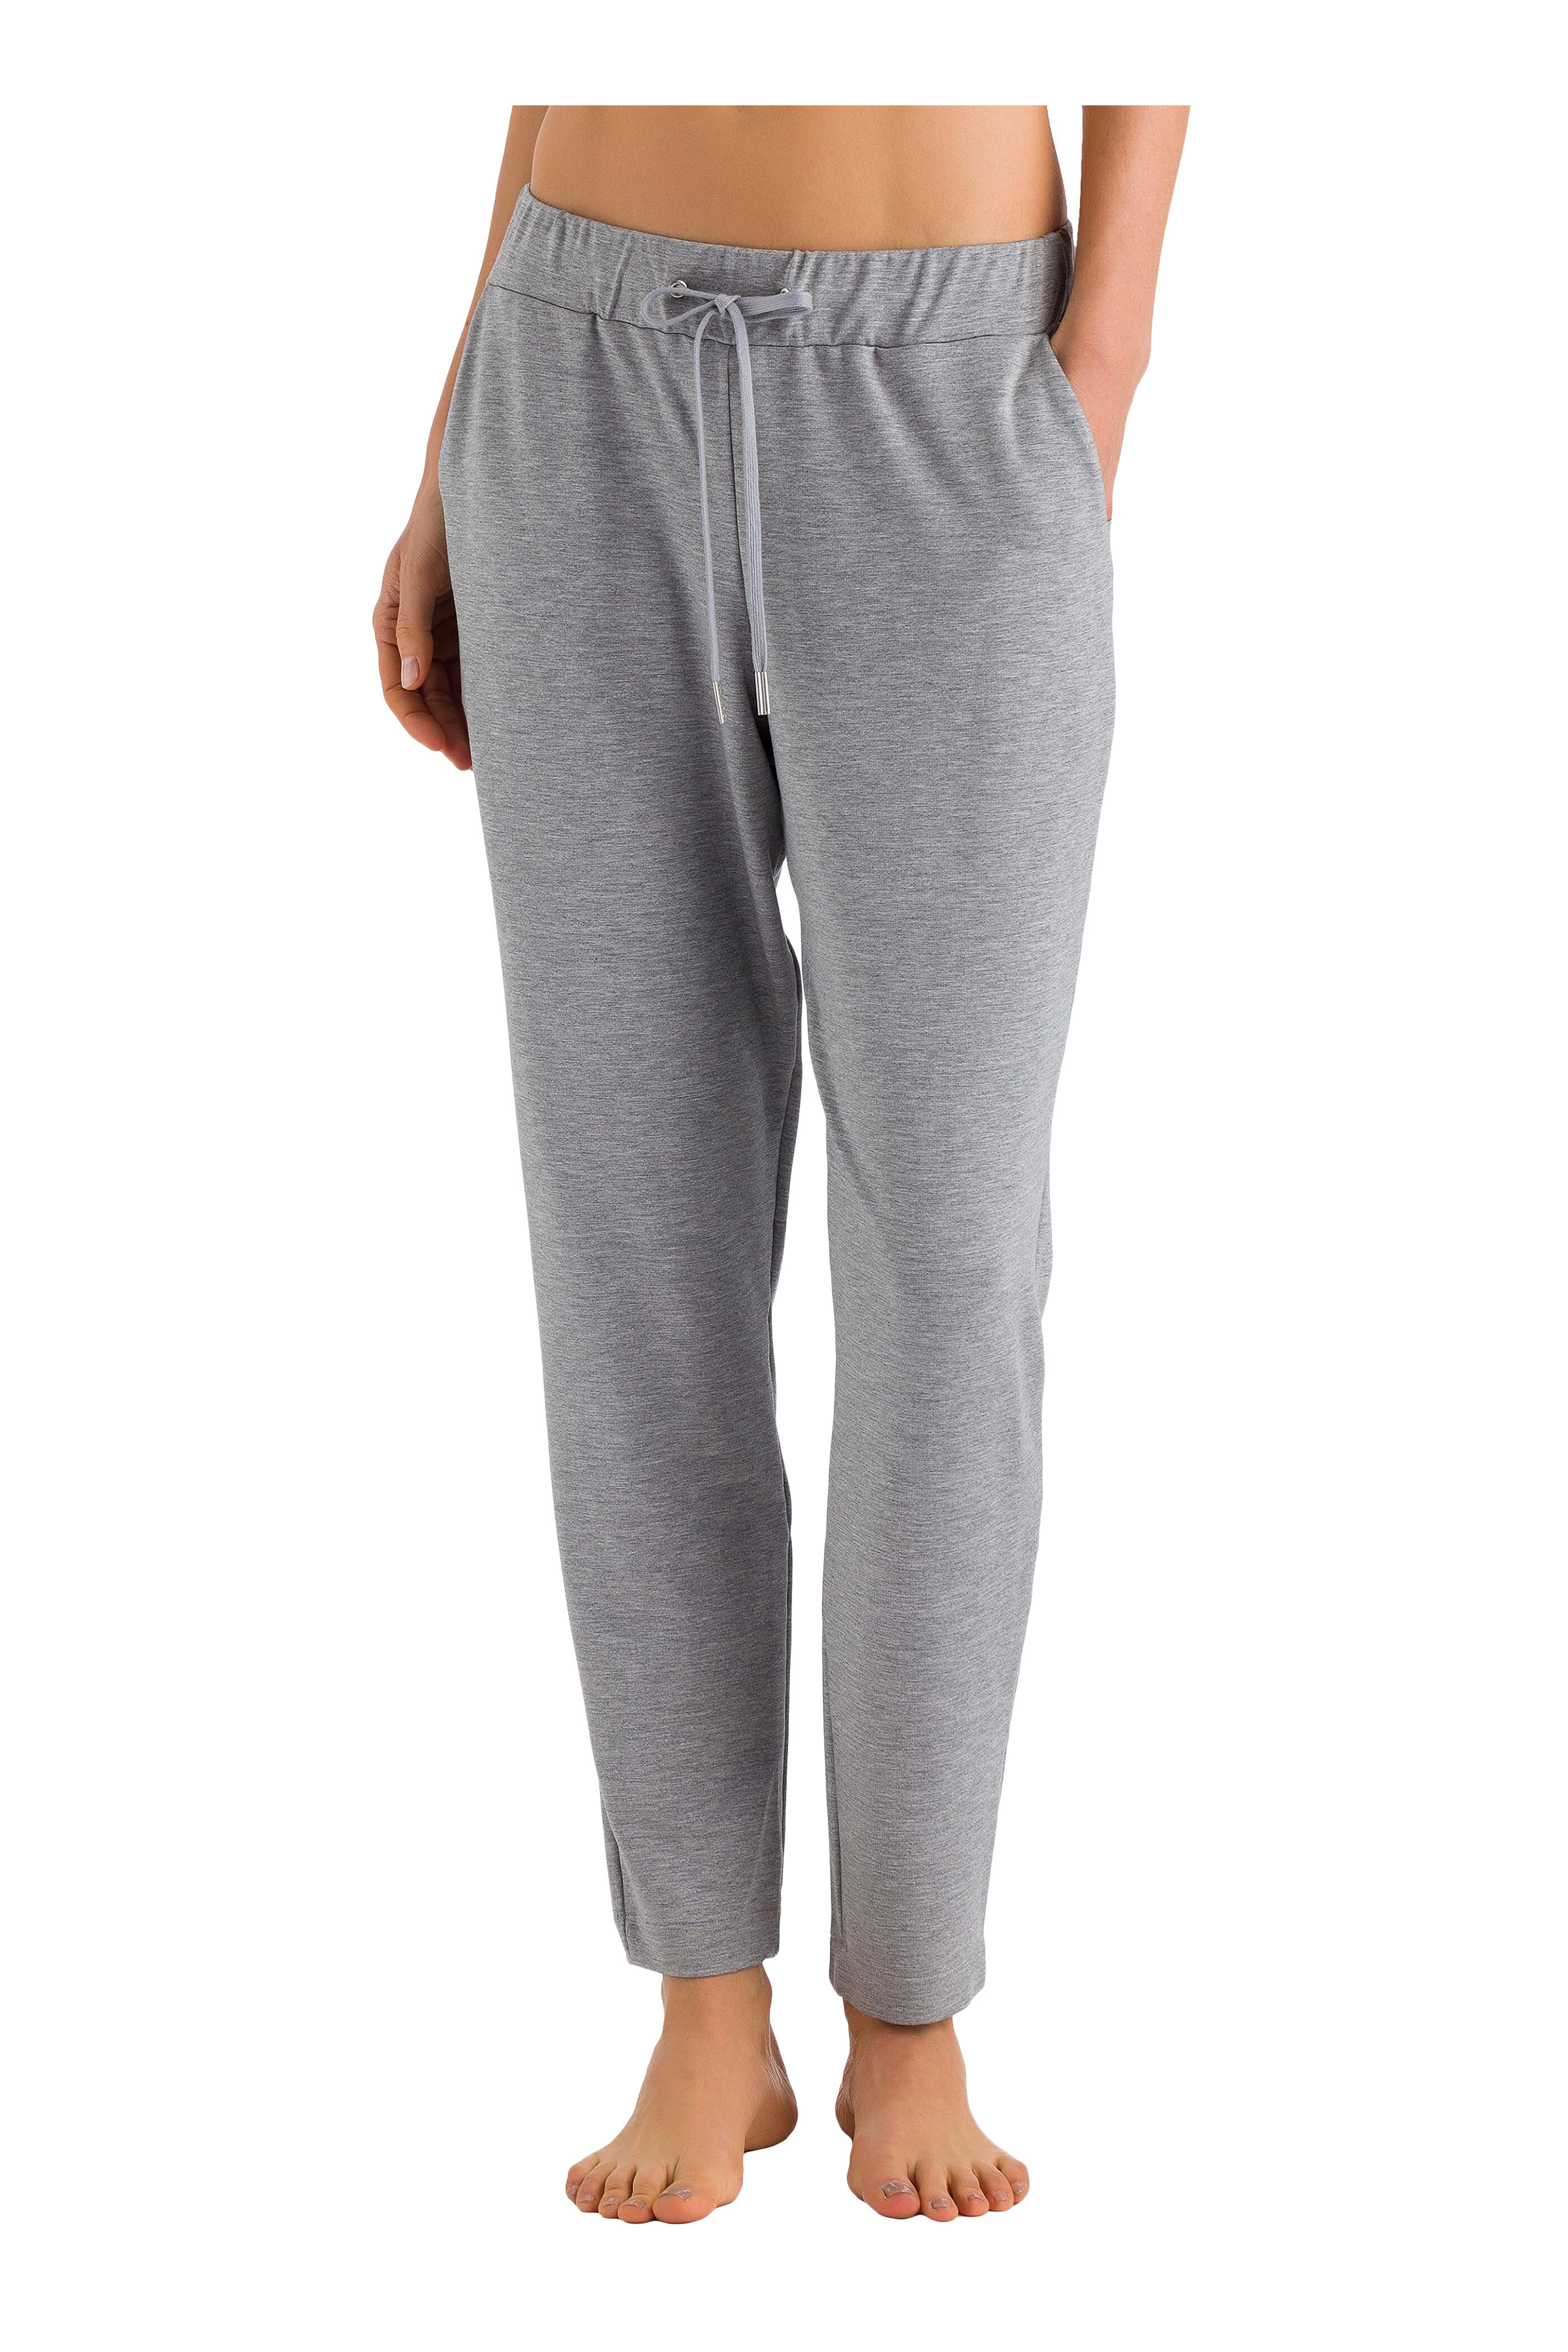 Hanro - Grey Balance Long Pant | Mitchell Stores